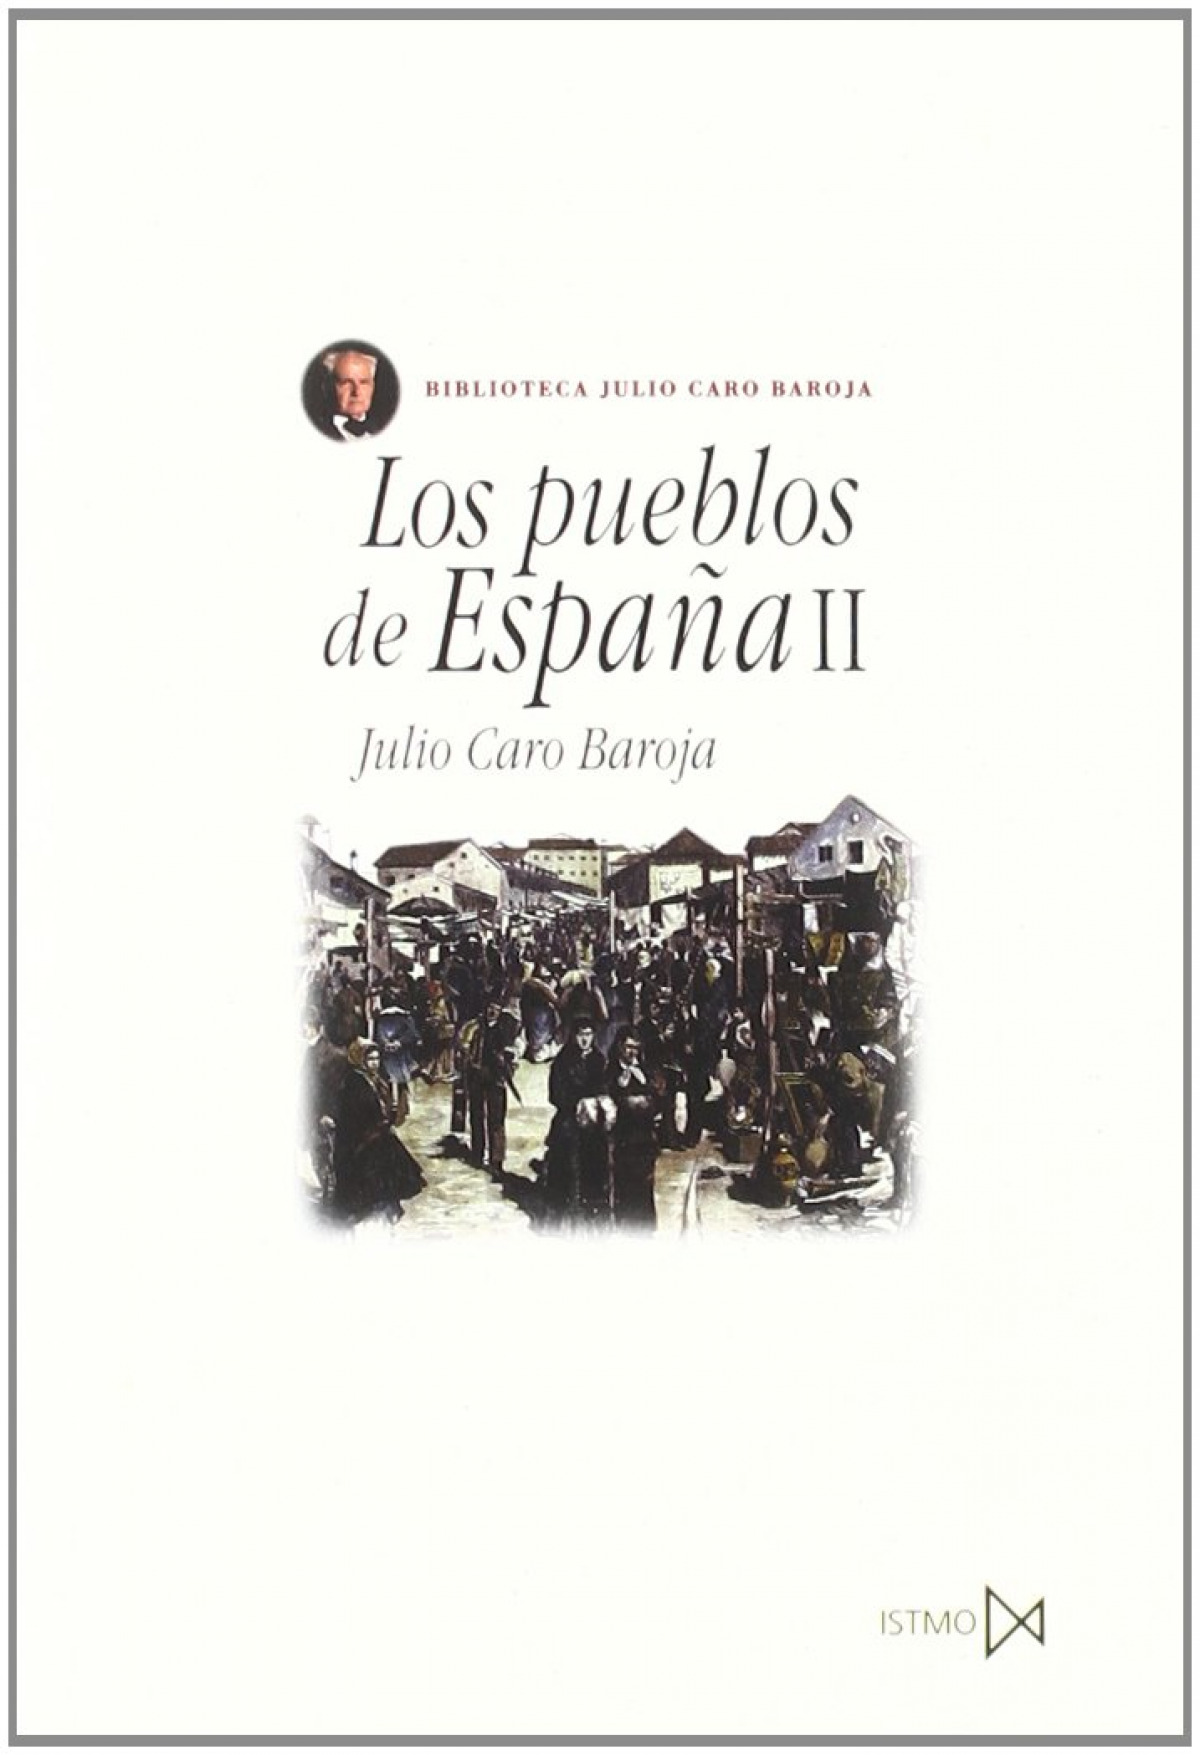 Los pueblos de España II - Caro Baroja, Julio